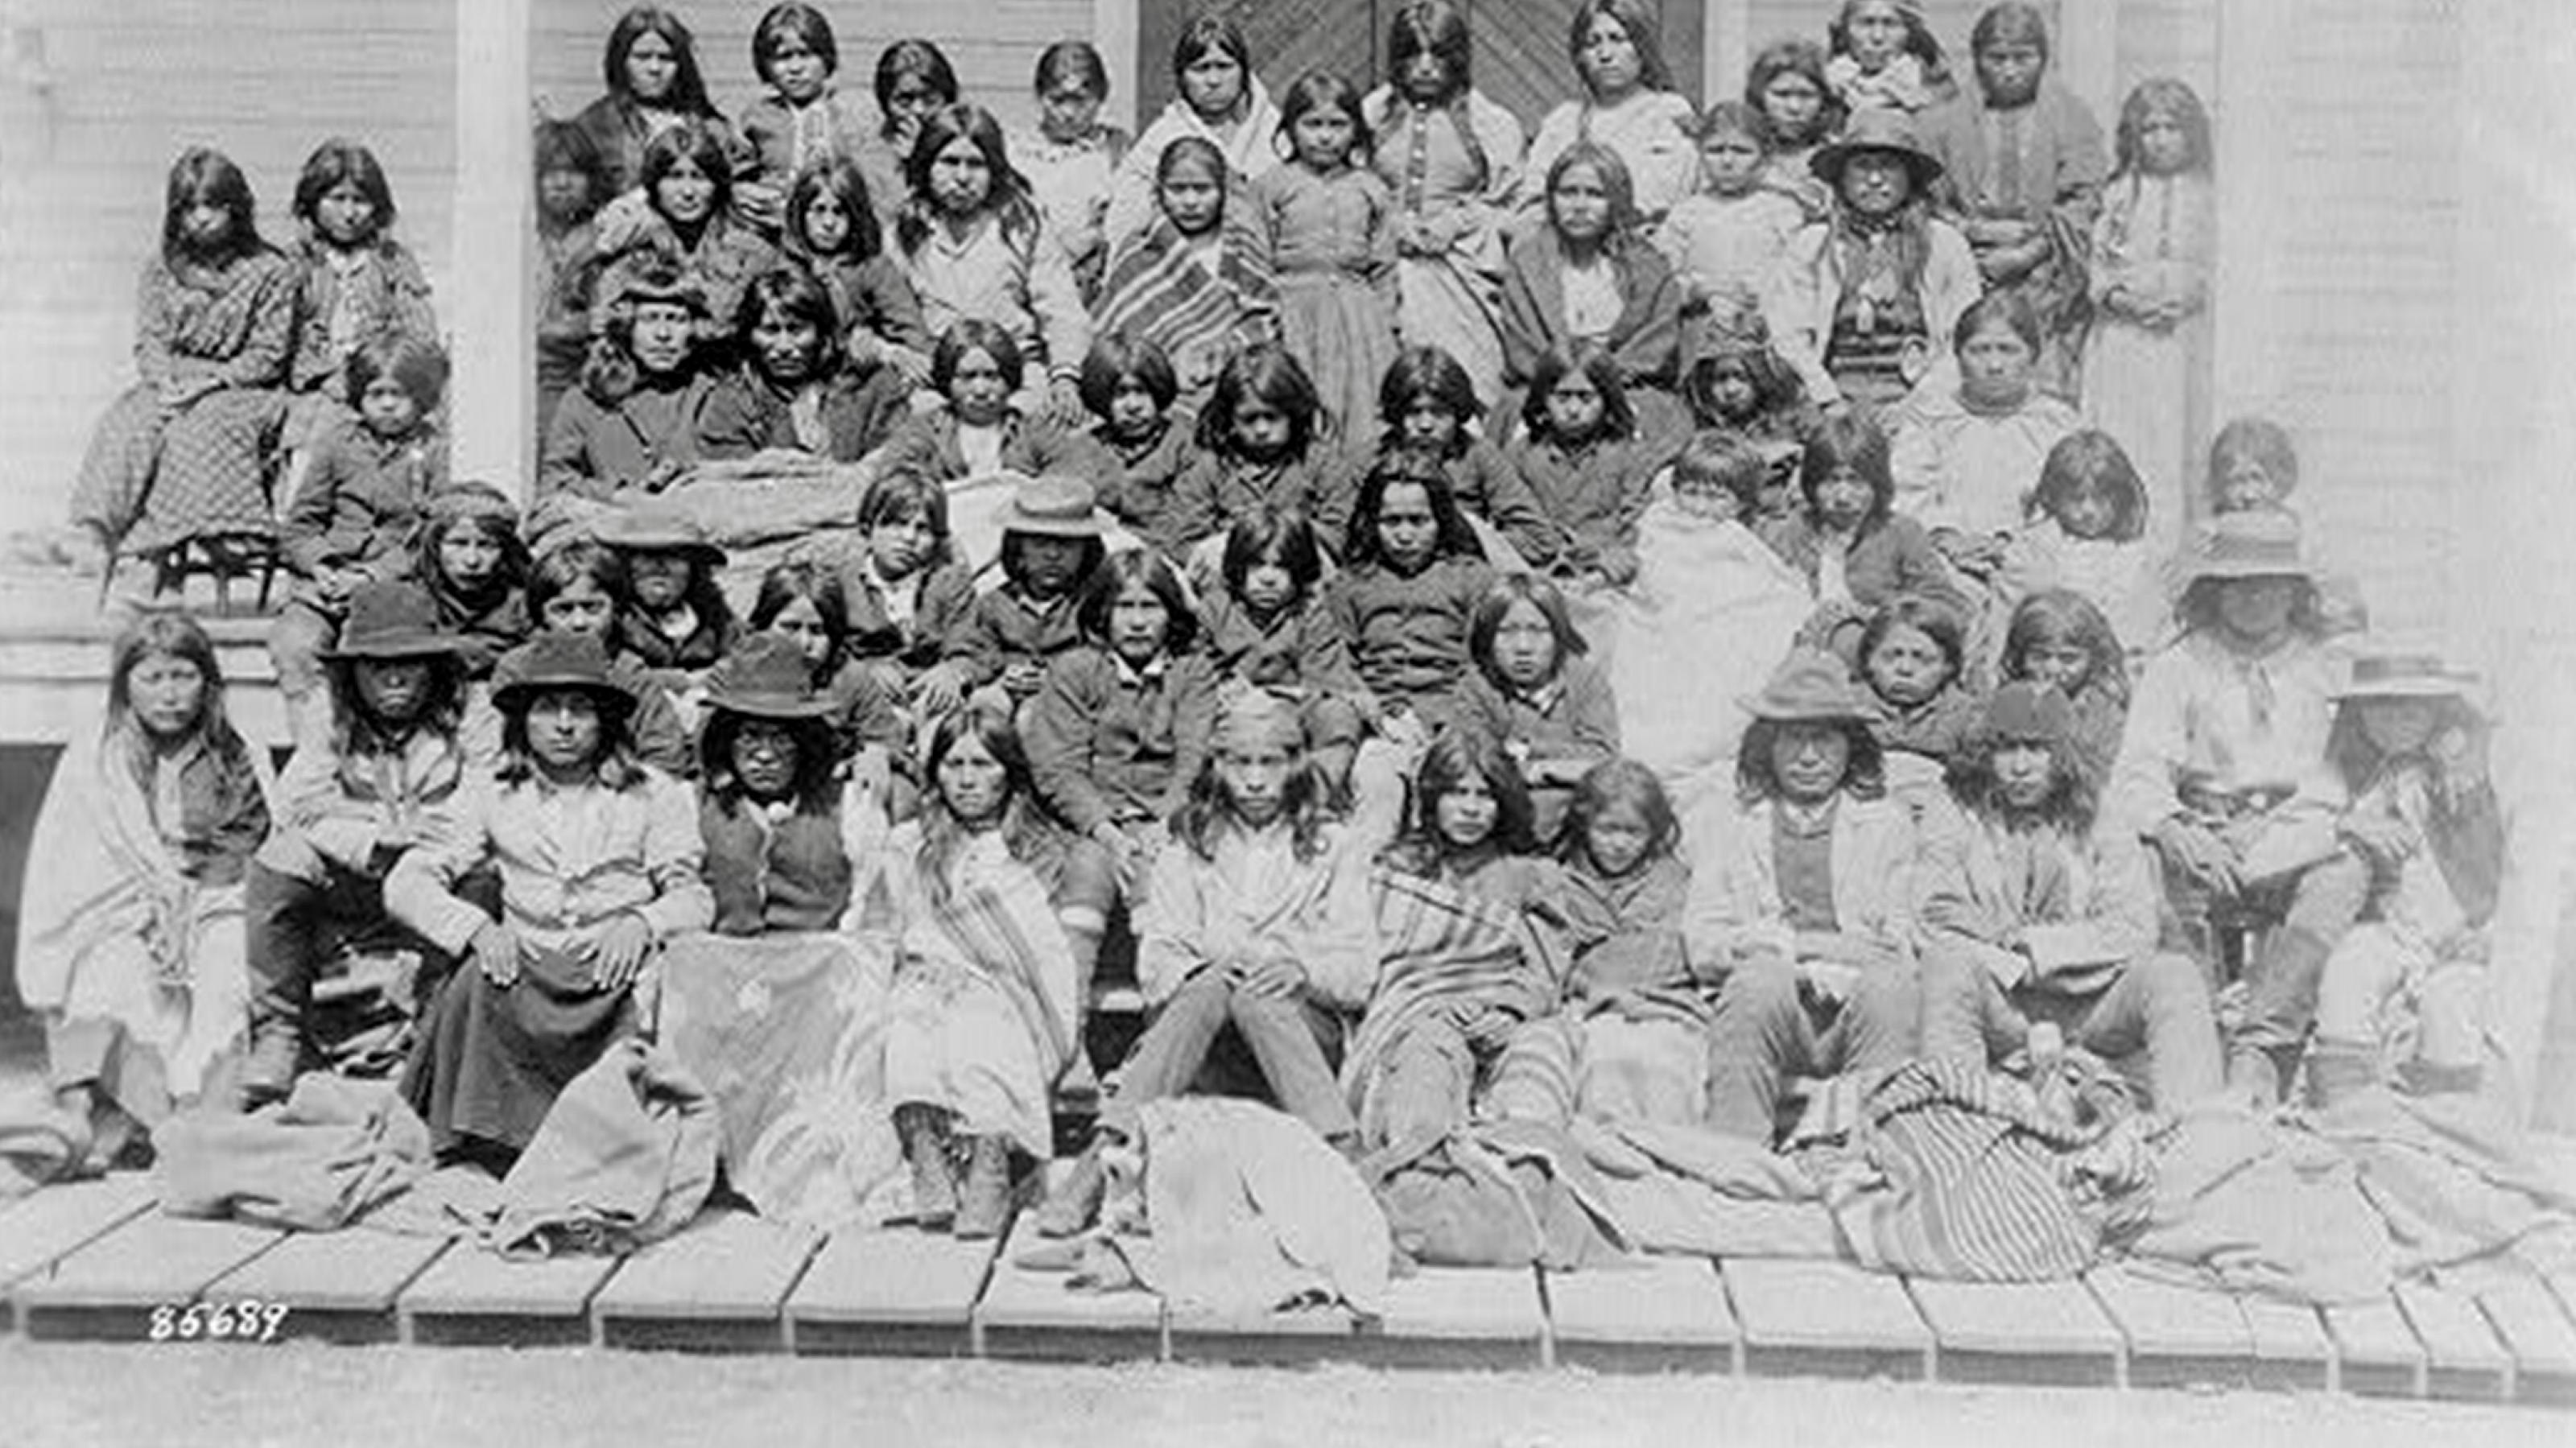 Eine Gruppe von etwa 50 Kindern posiert bei der Ankunft im Internat in Carlisle Pennsylvania in fünf Reihen sitzend auf den Treppen des Gebäudes. Die meisten haben langes dunkles Haar, manche tragen Decken über ihrer Kleidung. Sie schauen direkt in die Kamera